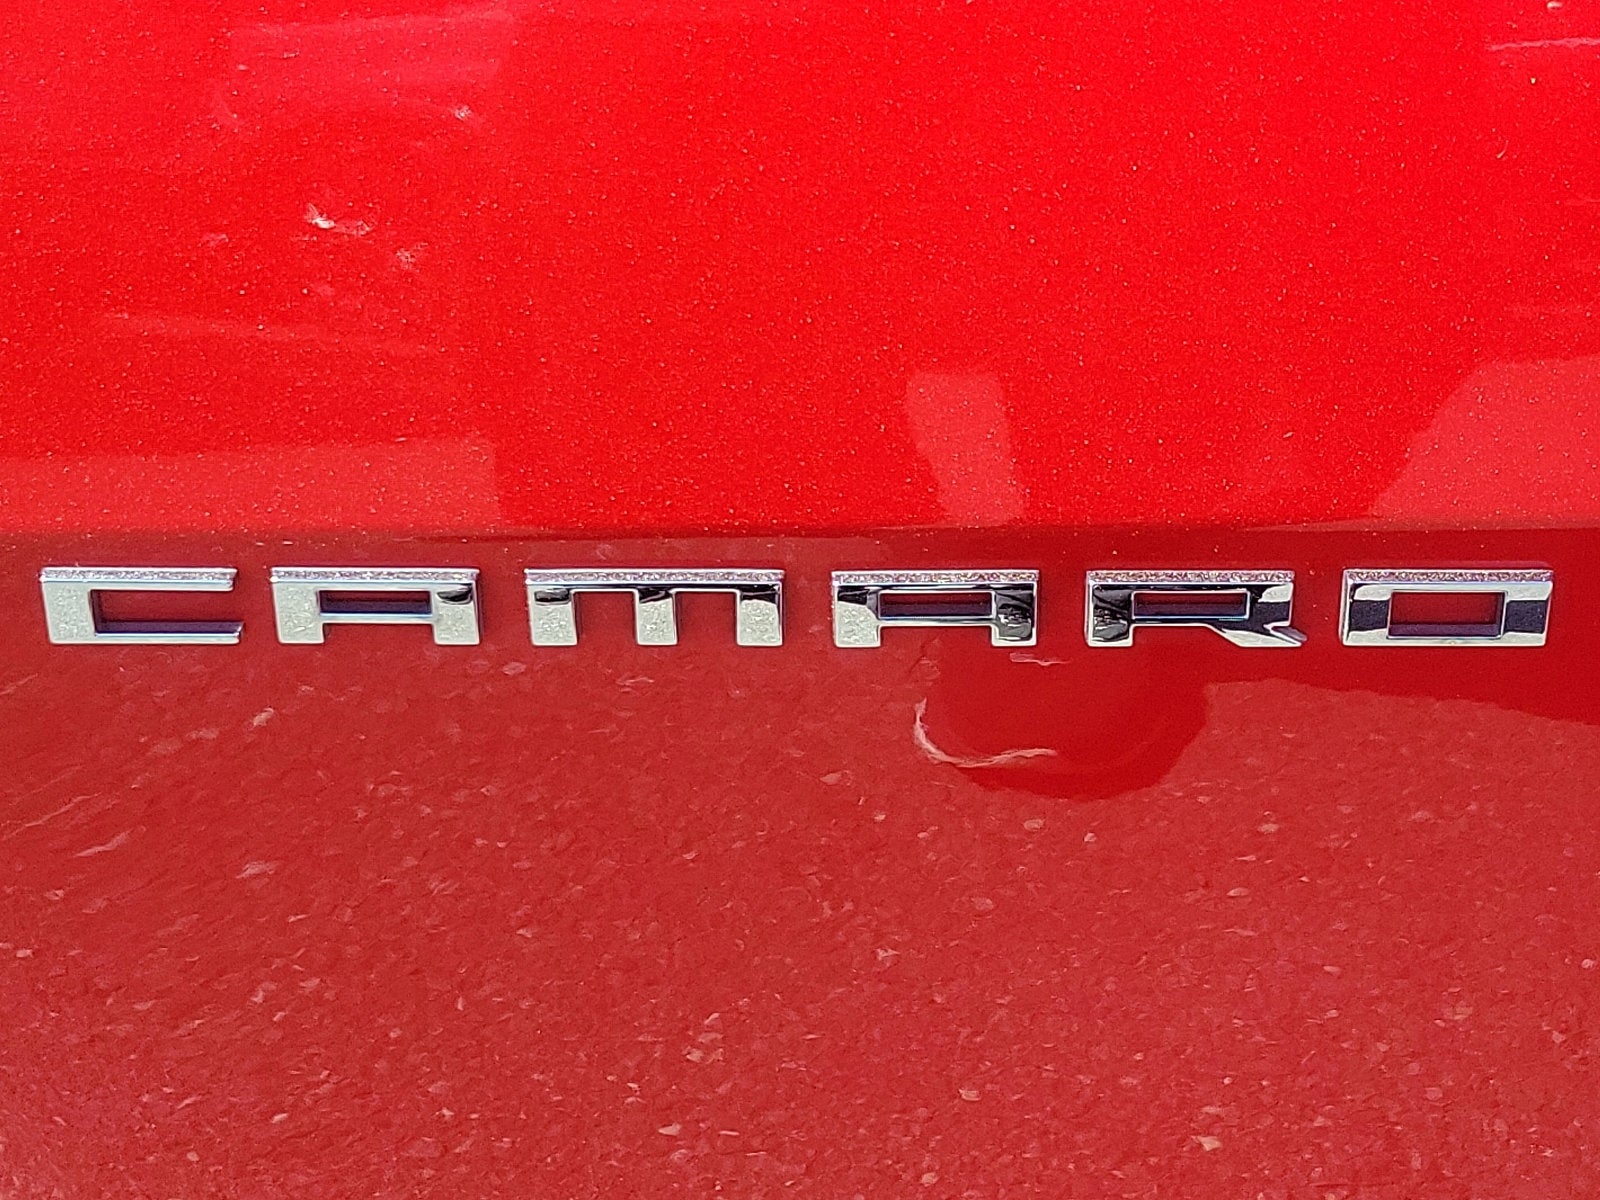 2015 Chevrolet Camaro LS